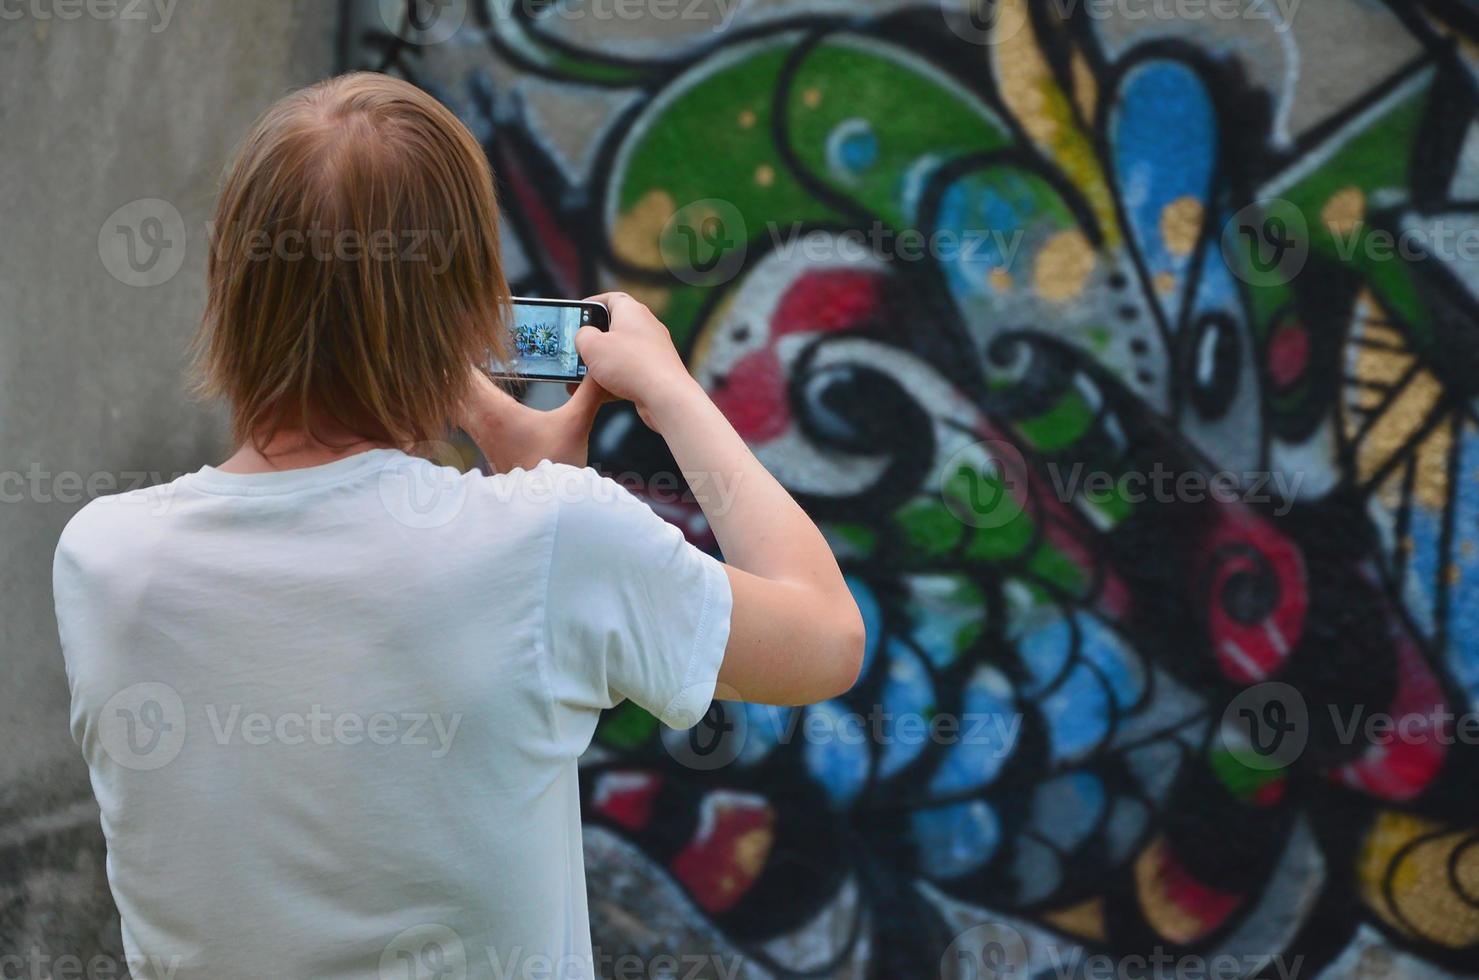 foto en proceso de dibujar graffiti en un antiguo muro de hormigón. un joven rubio de pelo largo toma fotos de su dibujo completo en un teléfono inteligente. concepto de arte callejero y vandalismo